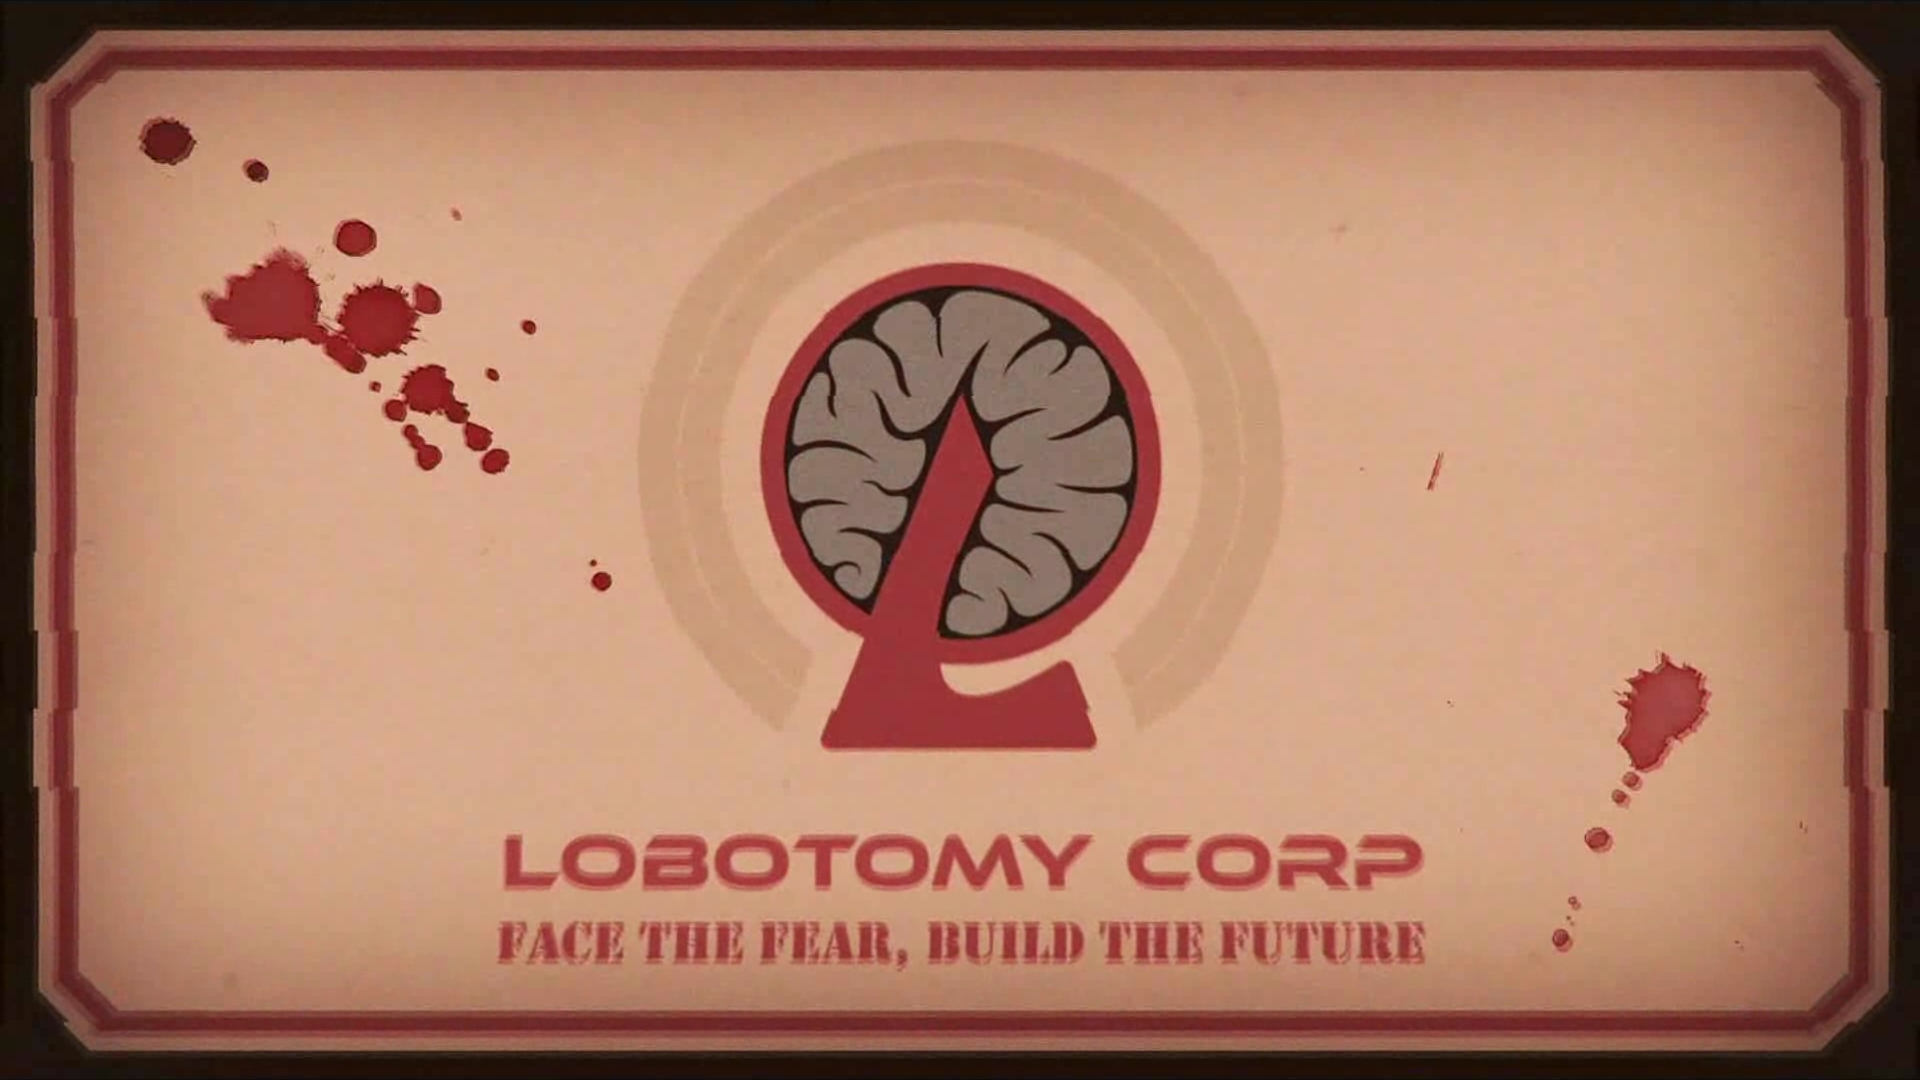 怪異からエネルギーを吸収する企業を描いた Lobotomy Corporation を紹介 世界観と演出が光る怪物マネジメントゲーム Automaton